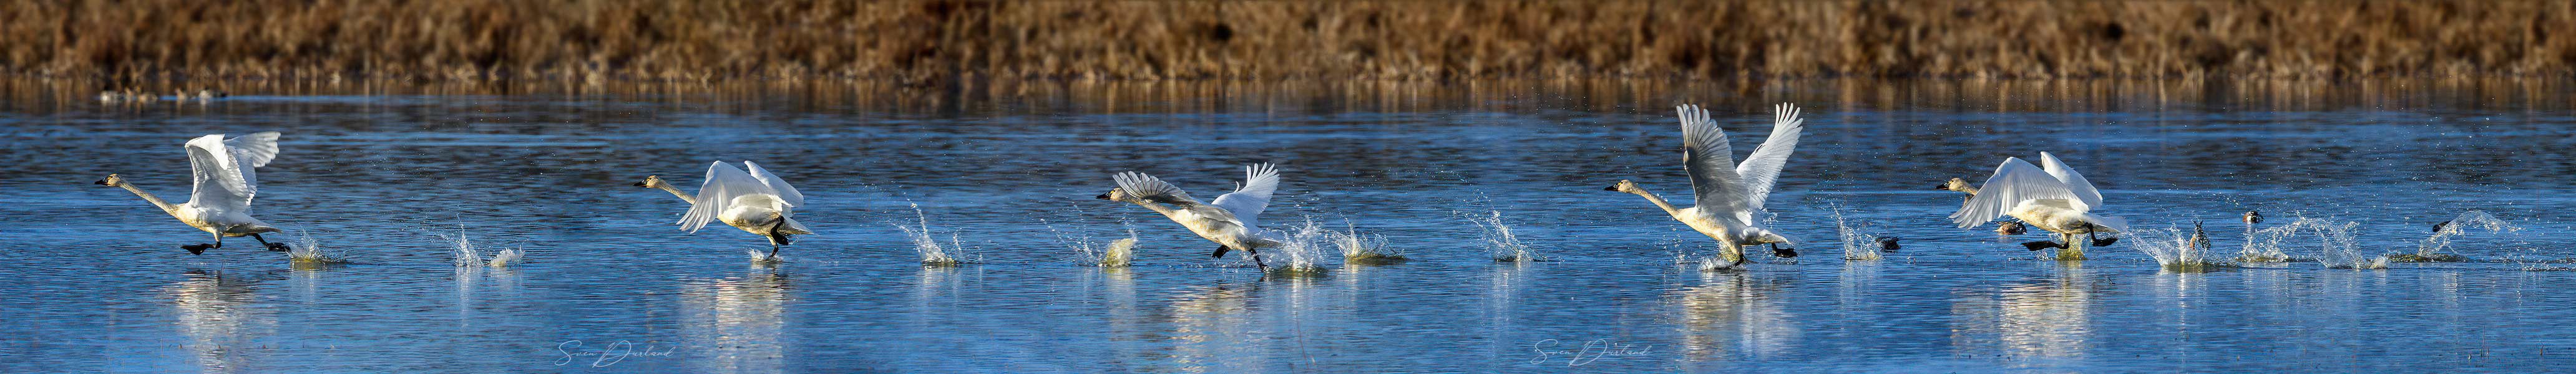 Tundra swans taking flight